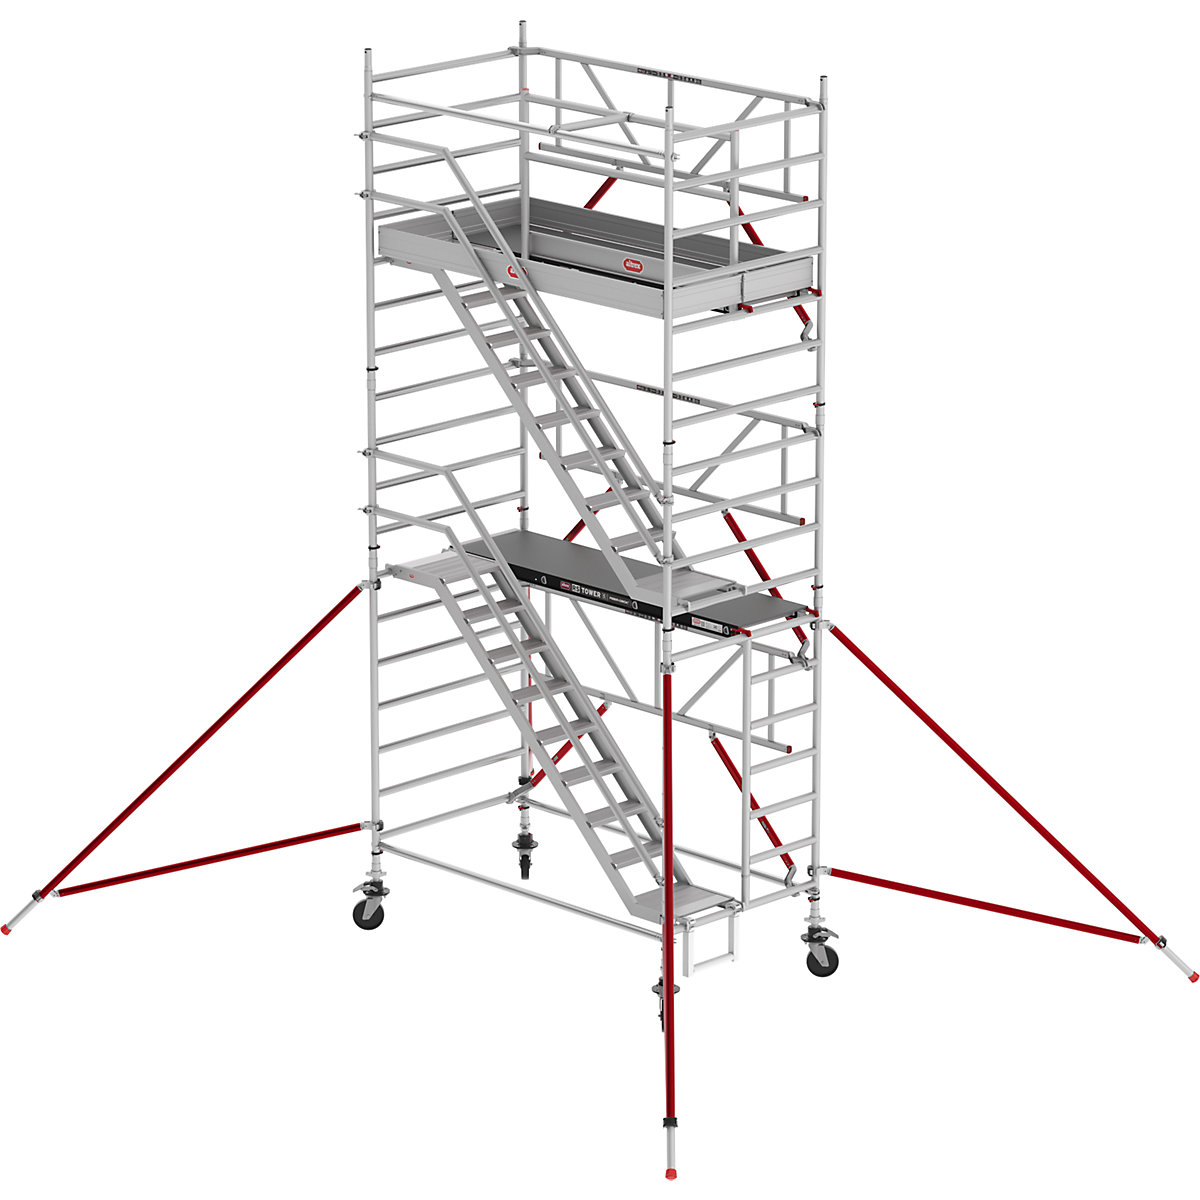 Treppengerüst RS TOWER 53 breit Altrex, Fiber-Deck®, Länge 2,45 m, Arbeitshöhe 6,20 m